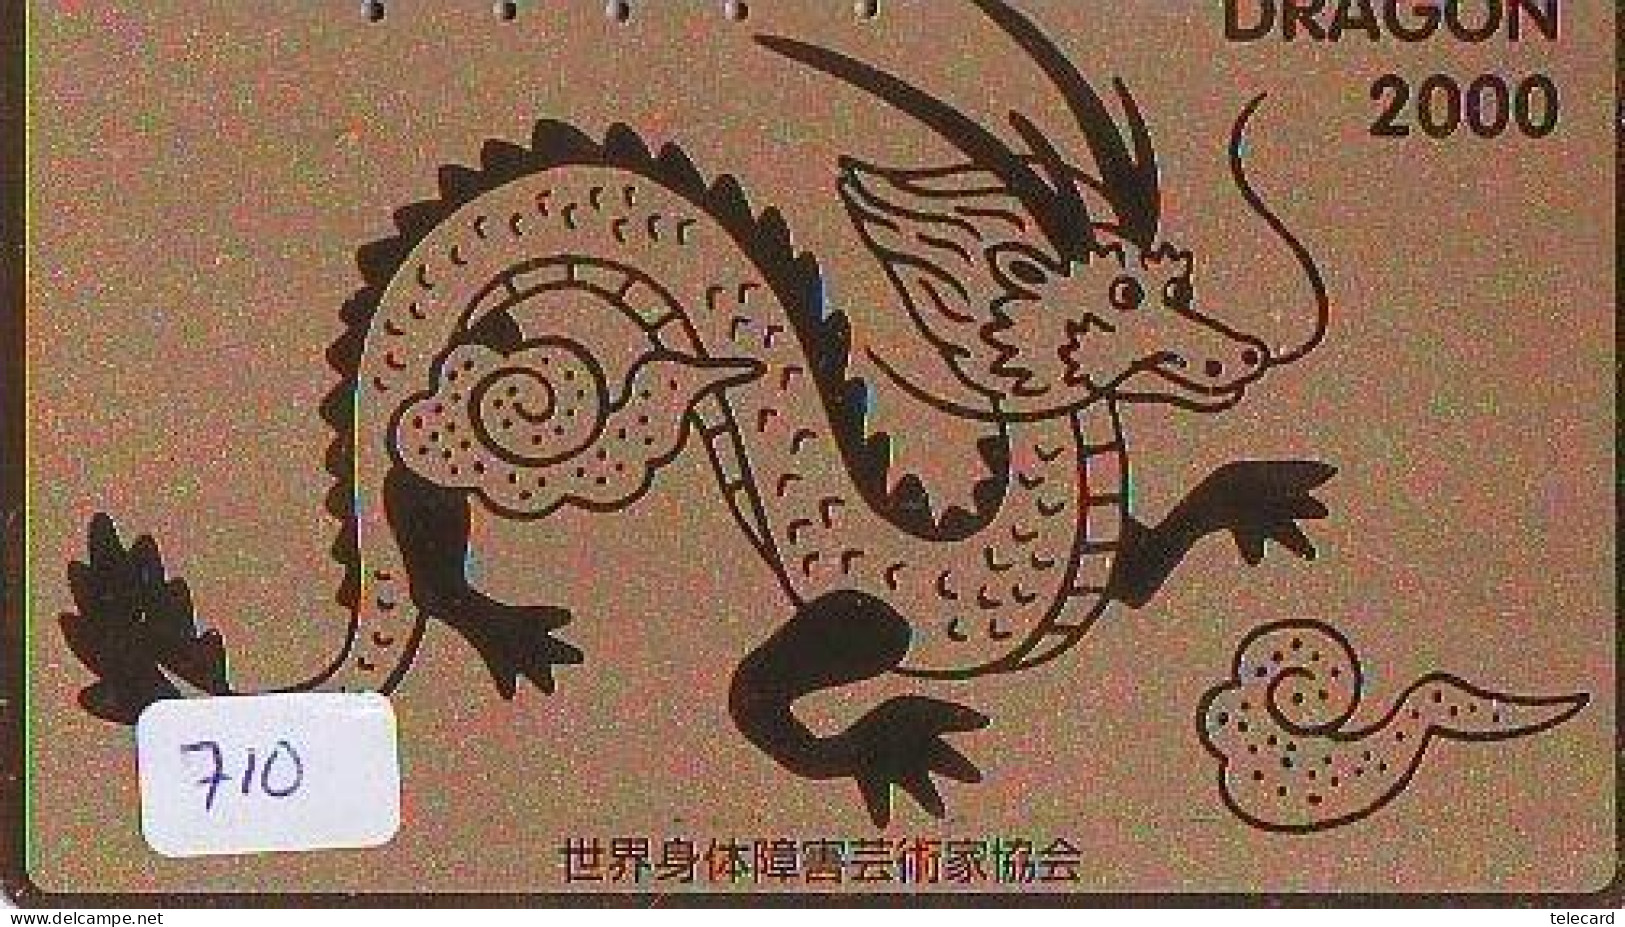 Télécarte Japon * DRAGON L'ESTRAGON DRACHE DRAGÓN DRAGO (710) Zodiaque - Zodiac Horoscope * Phonecard Japan - Zodiaque